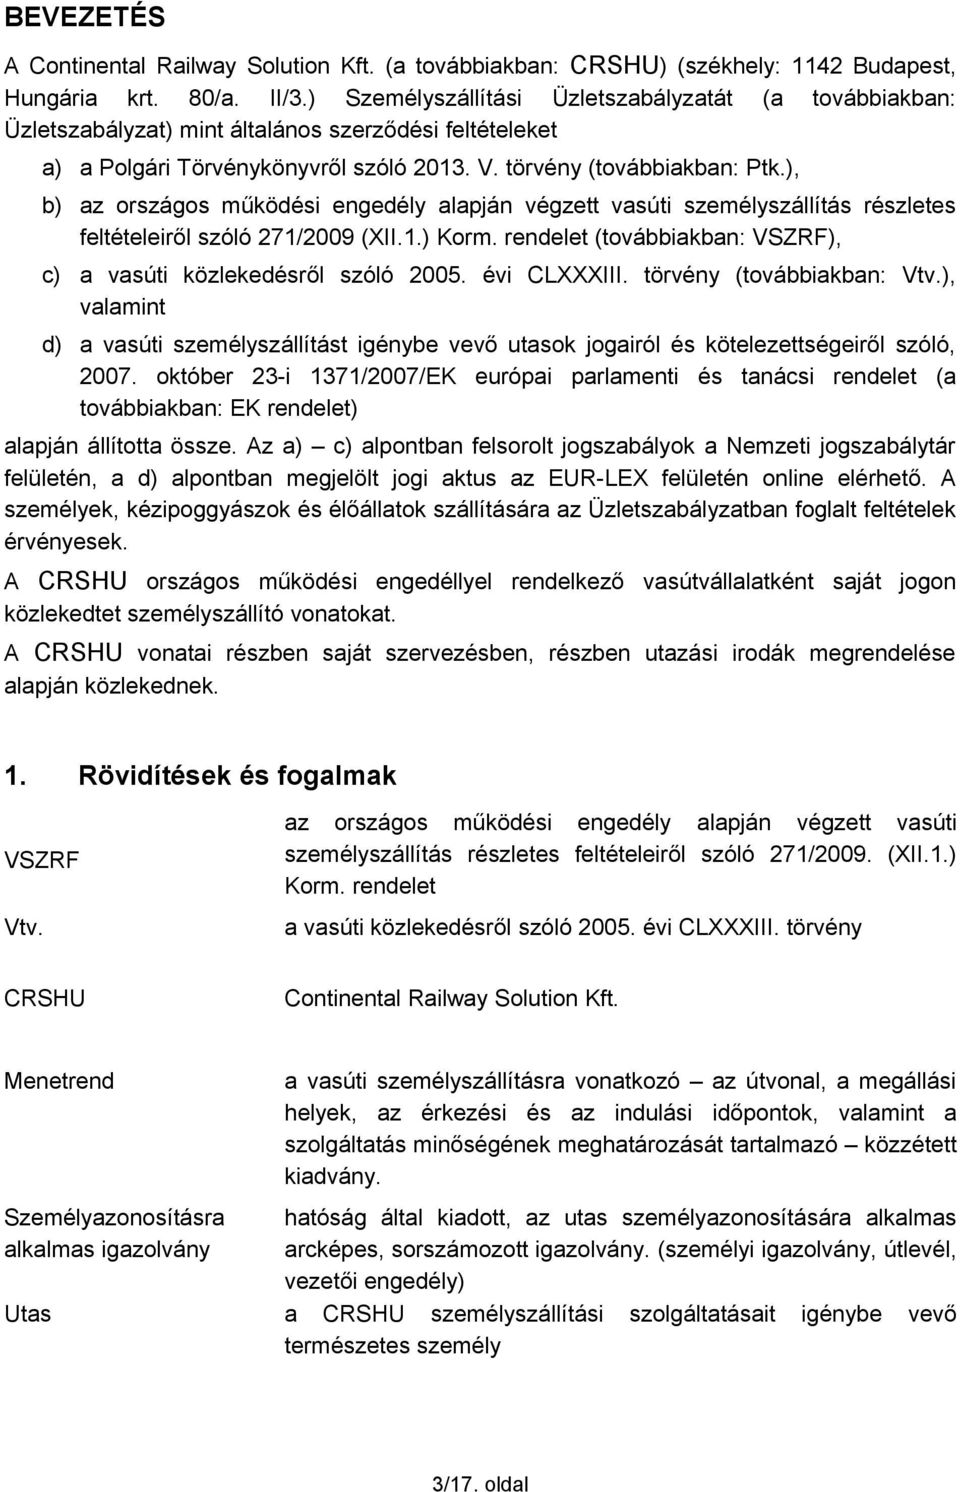 ), b) az országos működési engedély alapján végzett vasúti személyszállítás részletes feltételeiről szóló 271/2009 (XII.1.) Korm. rendelet (továbbiakban: VSZRF), c) a vasúti közlekedésről szóló 2005.